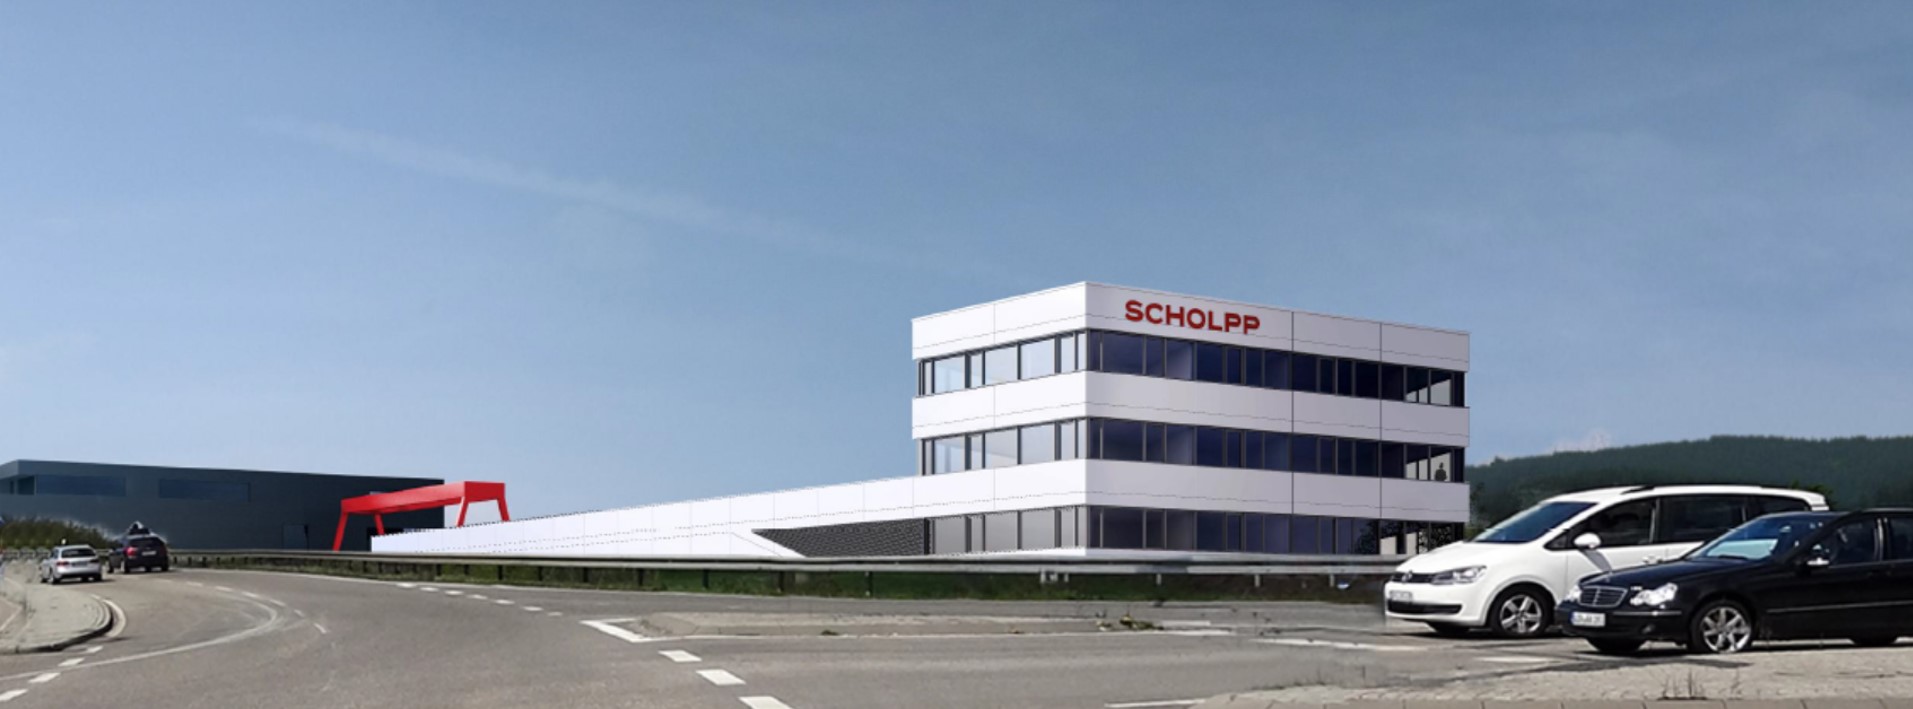 Niederlassung Firma Scholpp, Aussenansicht